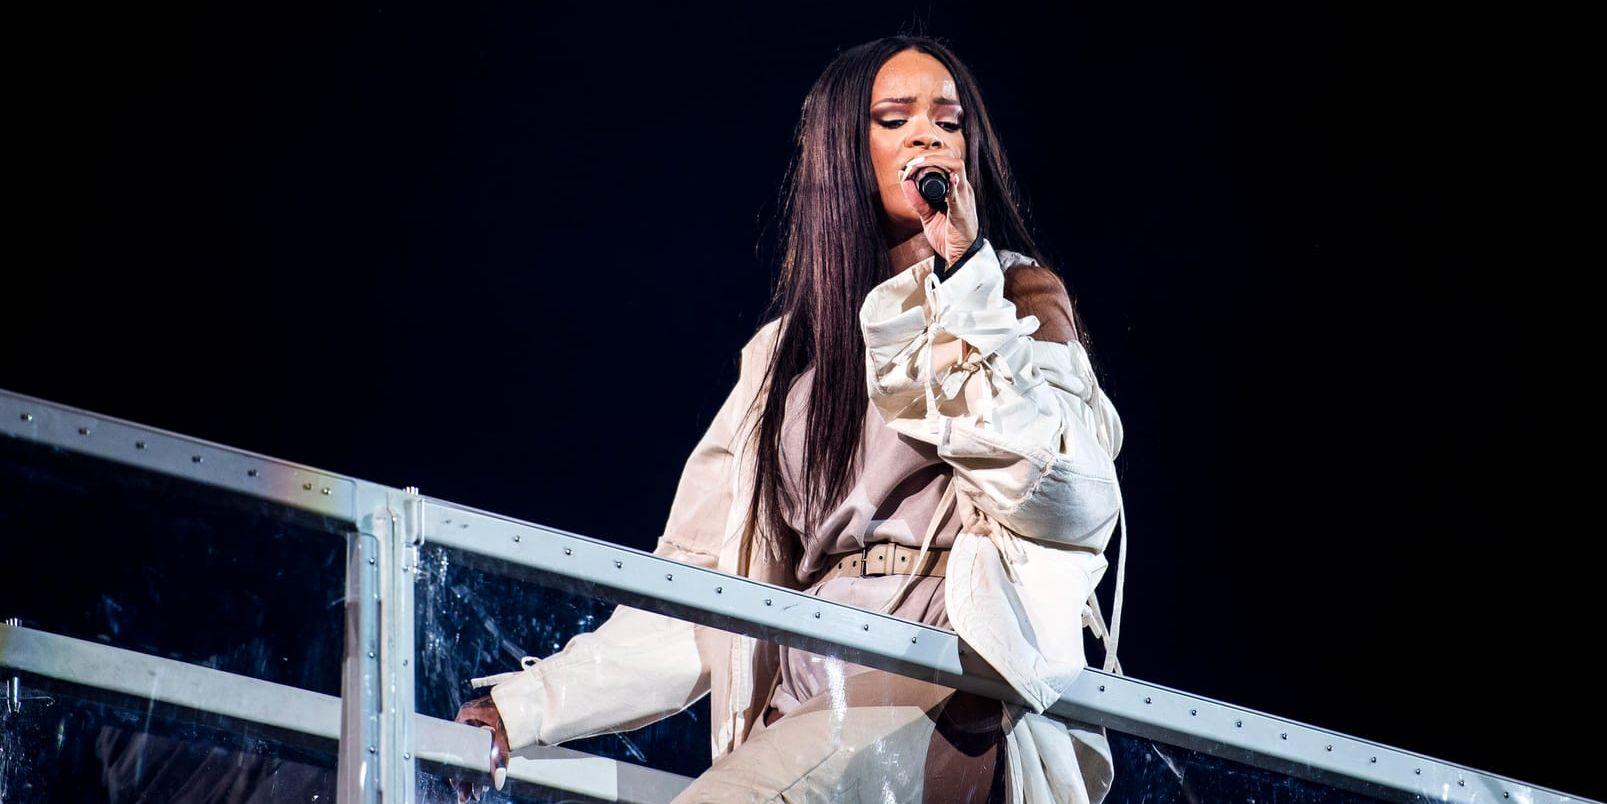 Rihanna ger inom en snar framtid ut två nya plattor enligt källor till Rolling stone. Arkivbild.